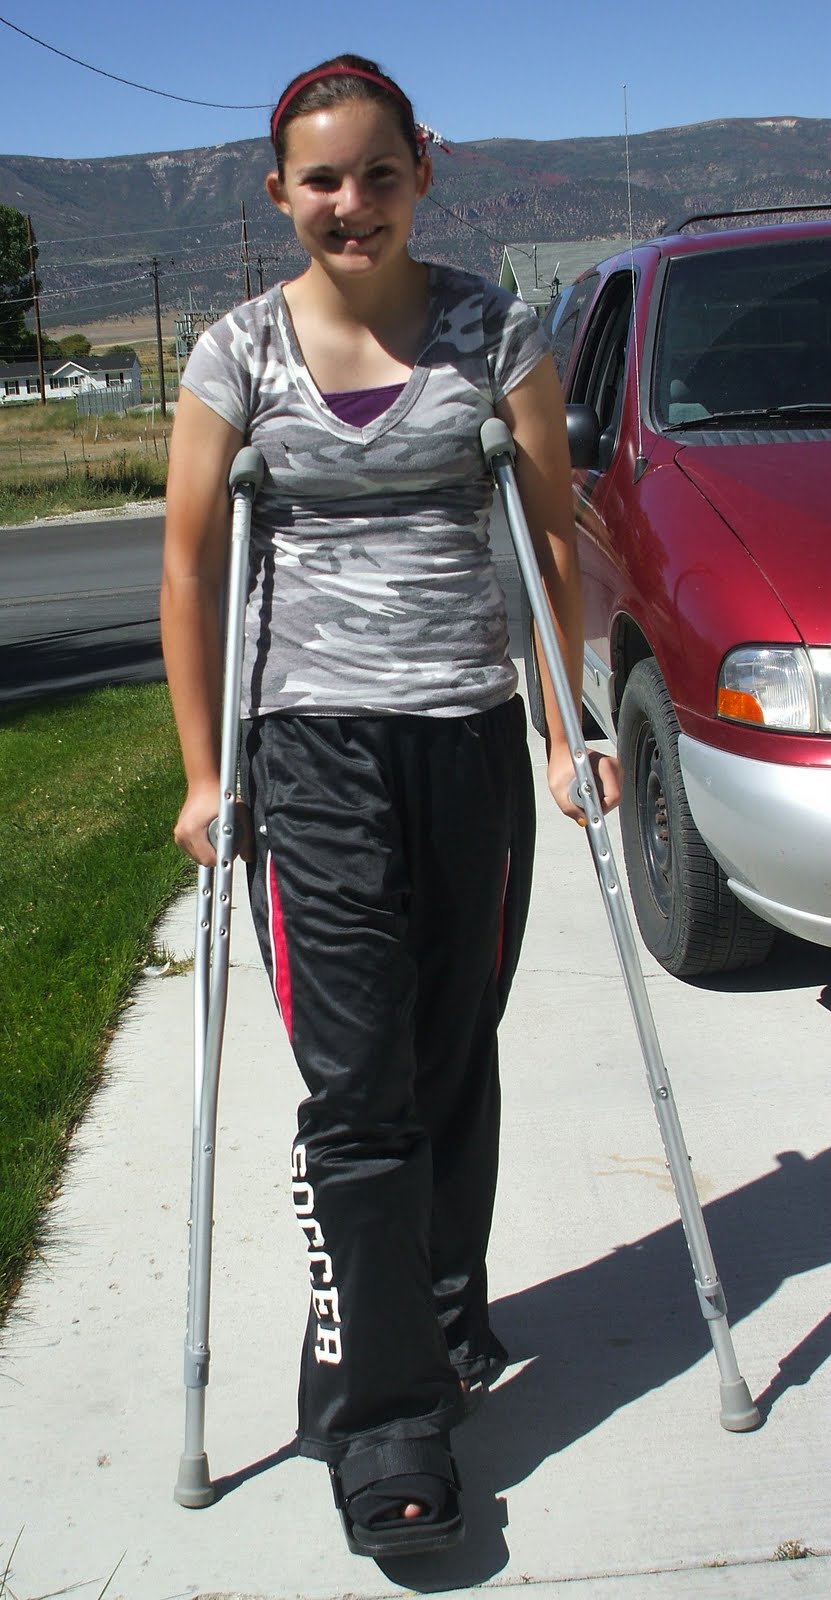 SKINNERTOPIA: Jasmine broke her ankle